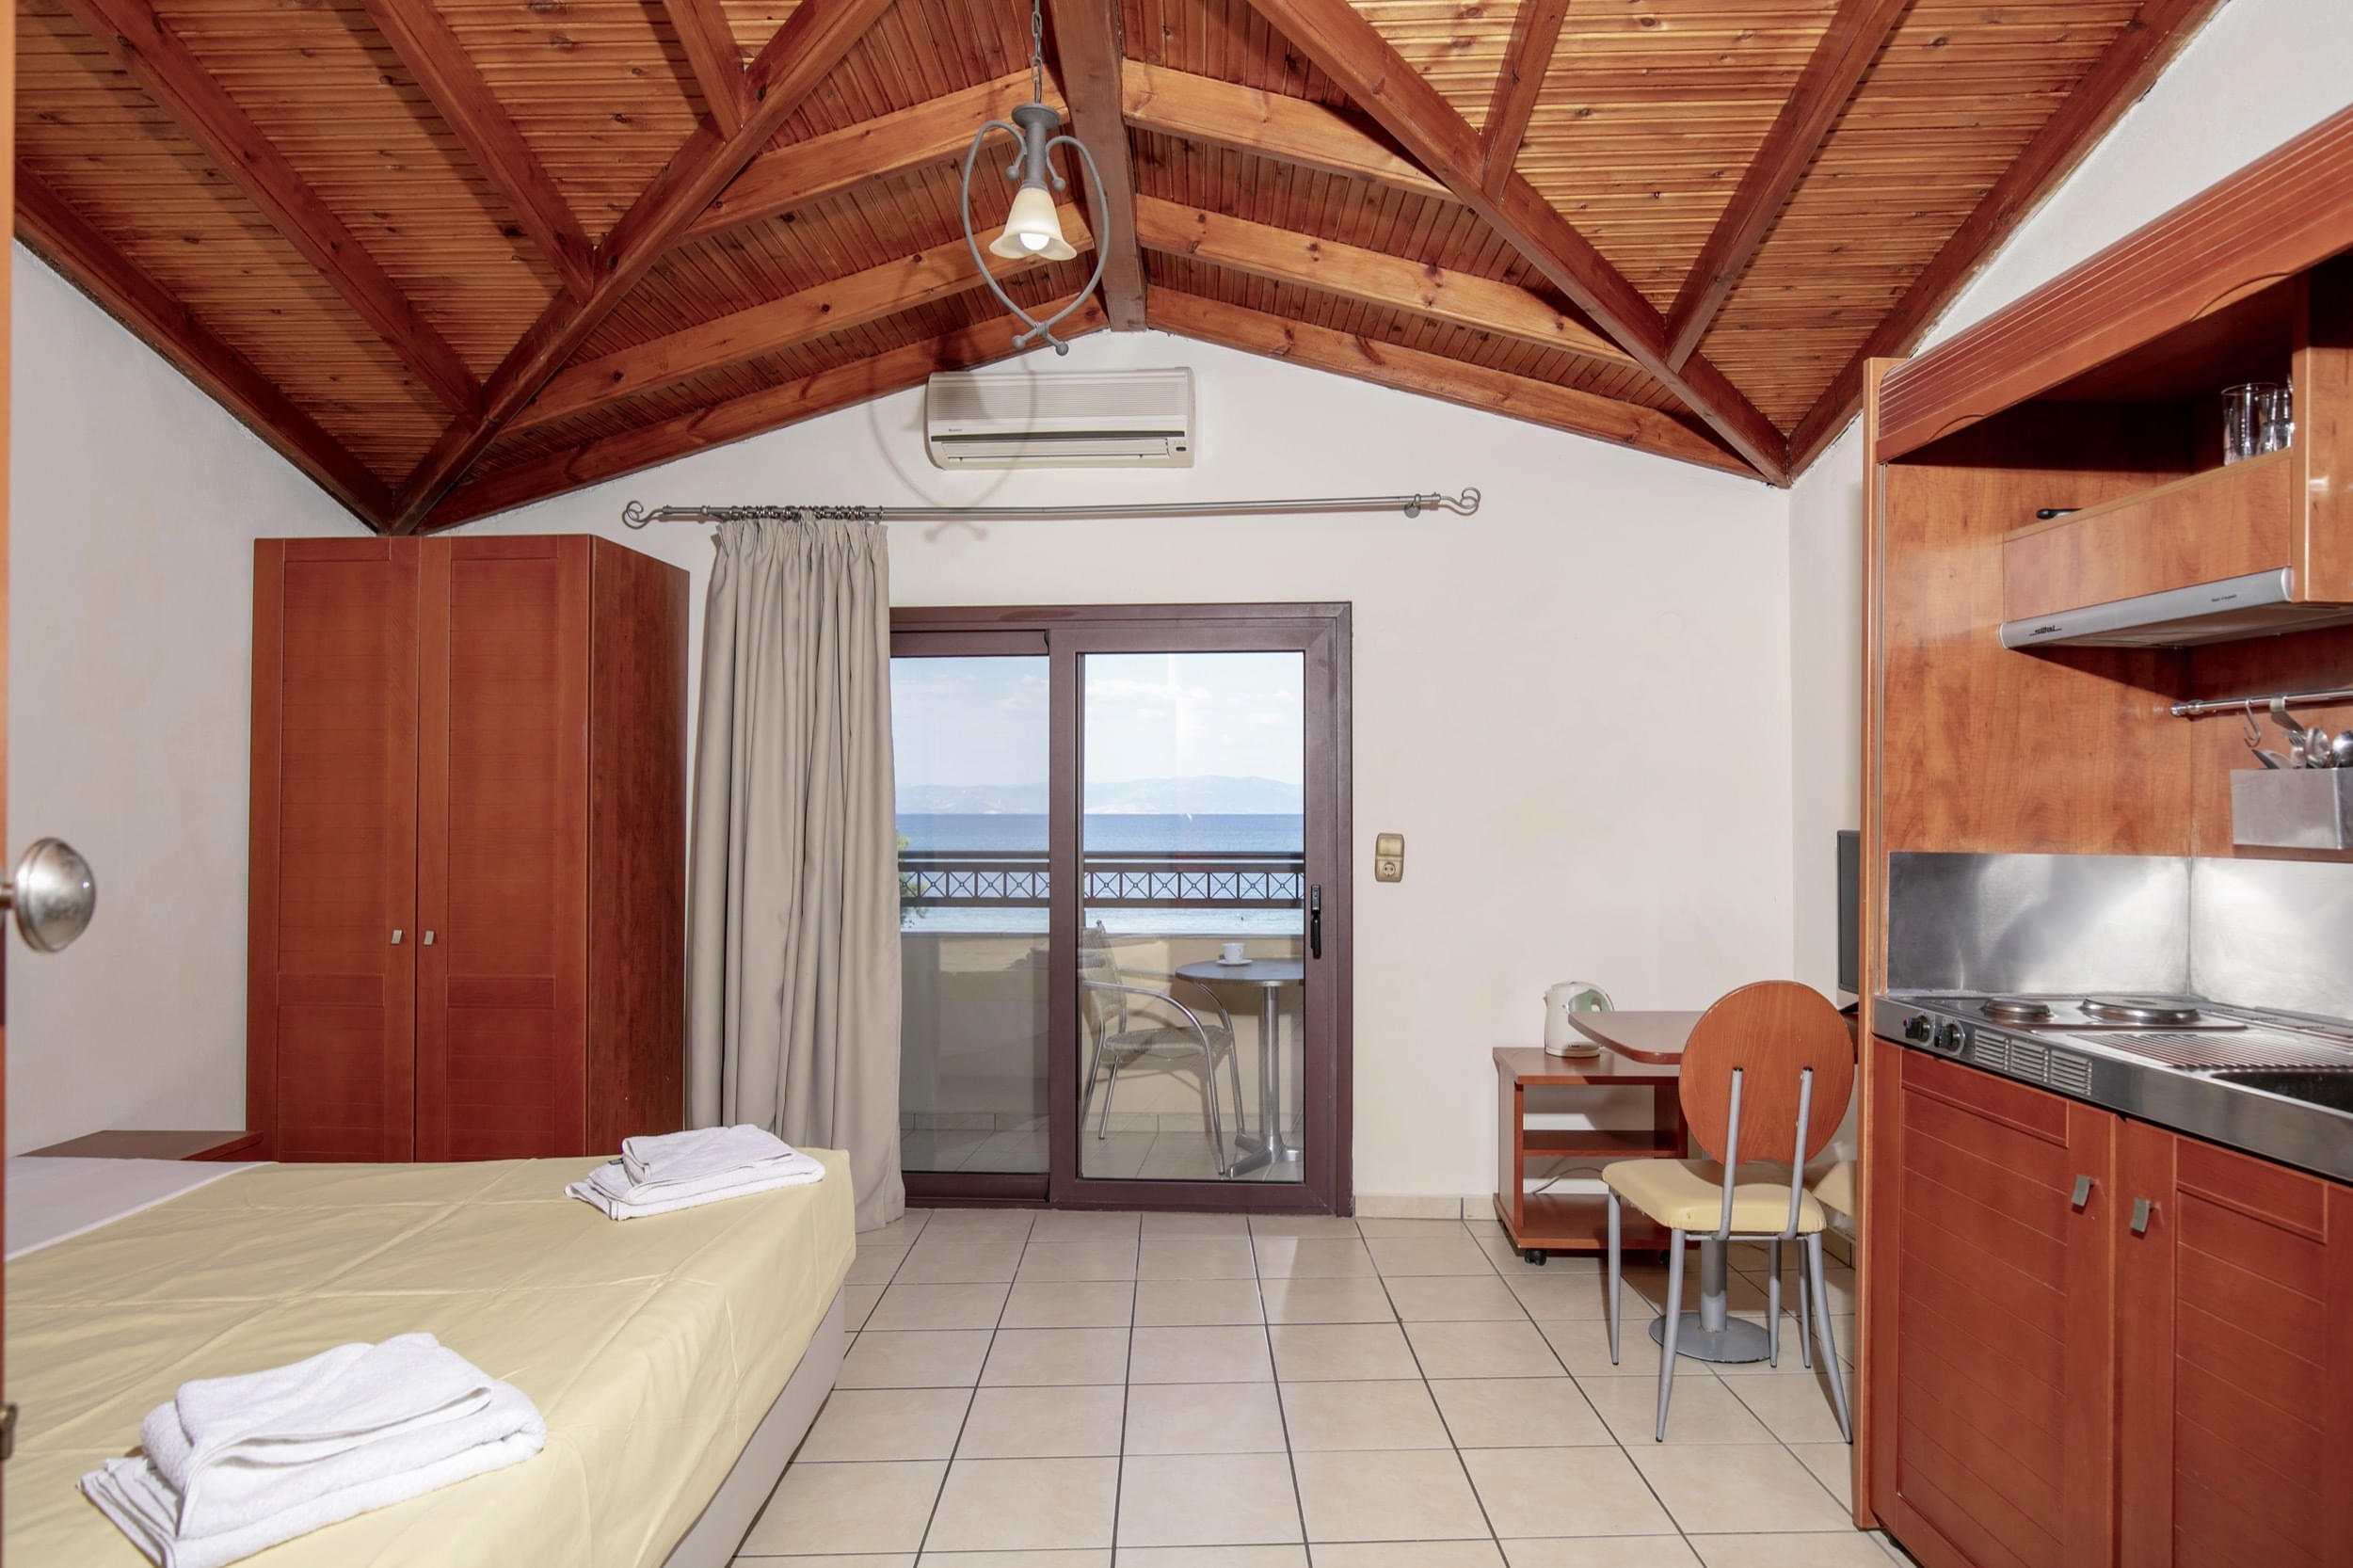 cooee_mediterreanean_beach_hotel_der1326910